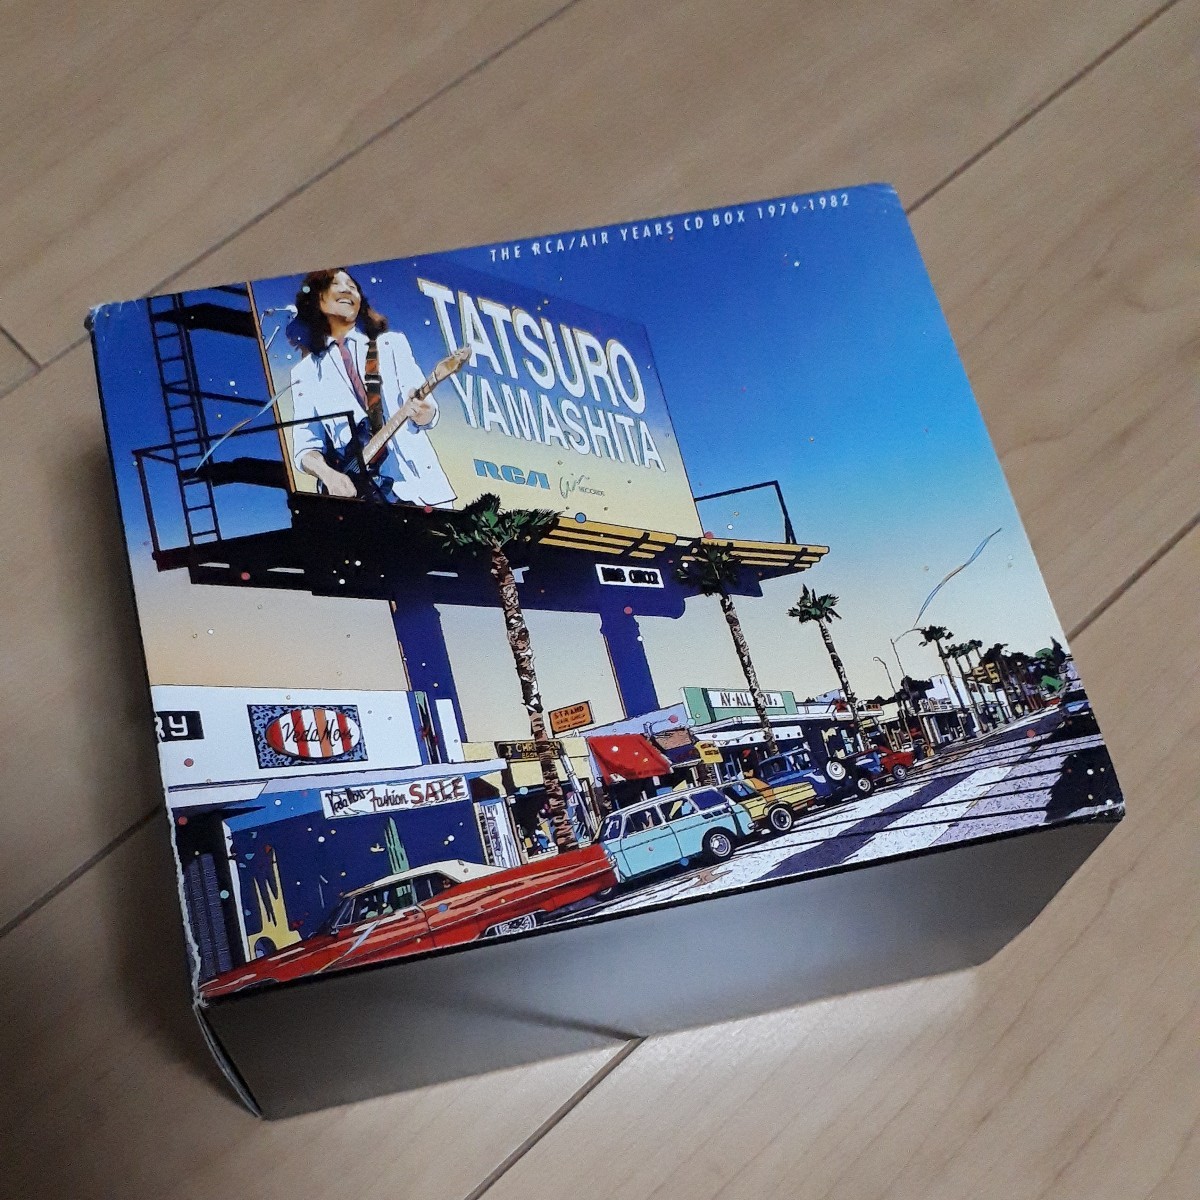 山下達郎 THE RCA/AIR YEARS CD BOX 1976-1982 - CD